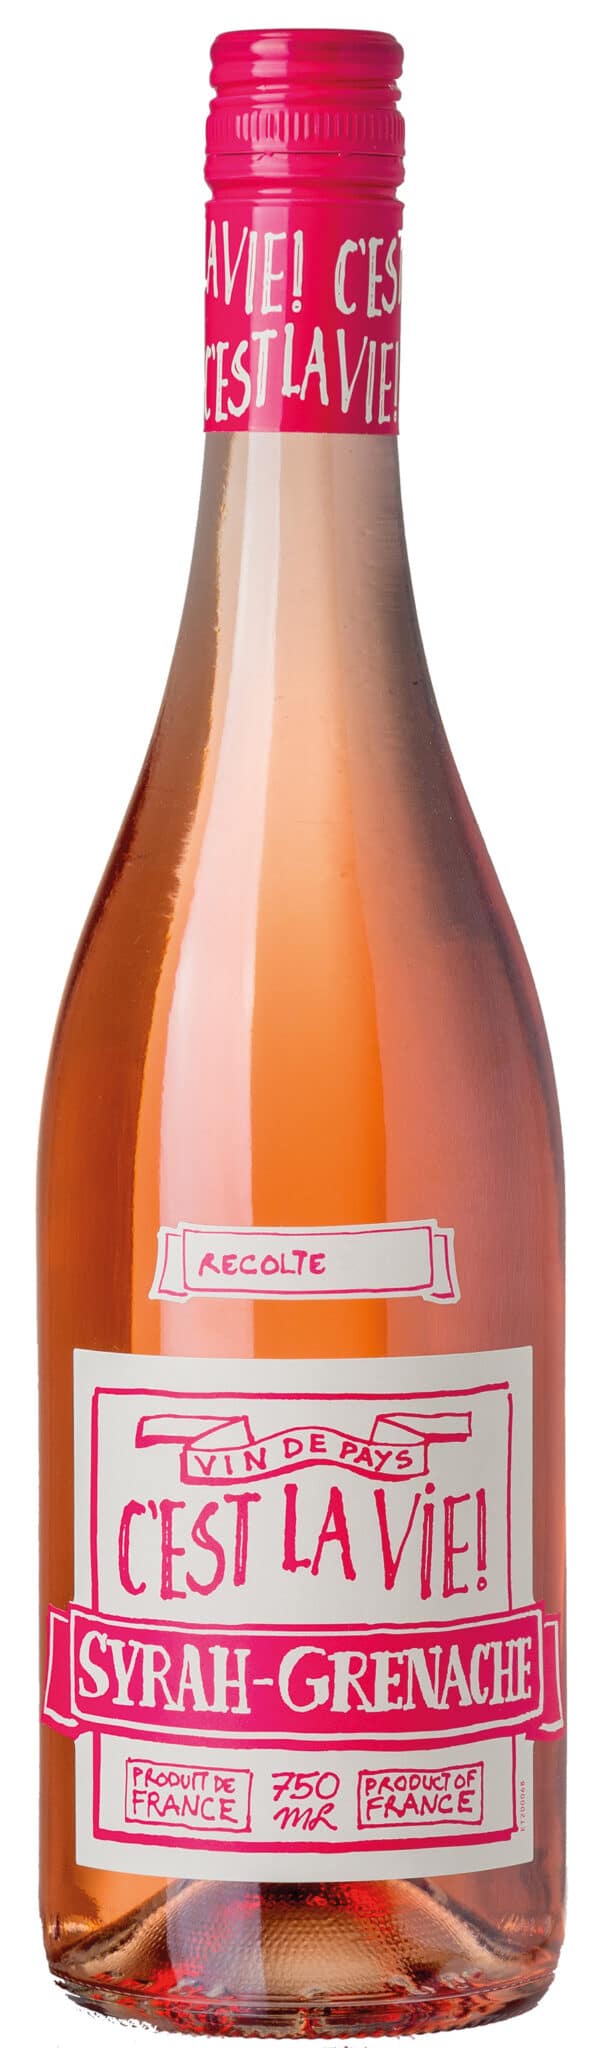 C’est la Vie, Syrah & Grenache Rosé er en elegant rosévin, som besidder en frisk duft med noter af solbær. Vinen har en fin balance mellem frugt og syre.